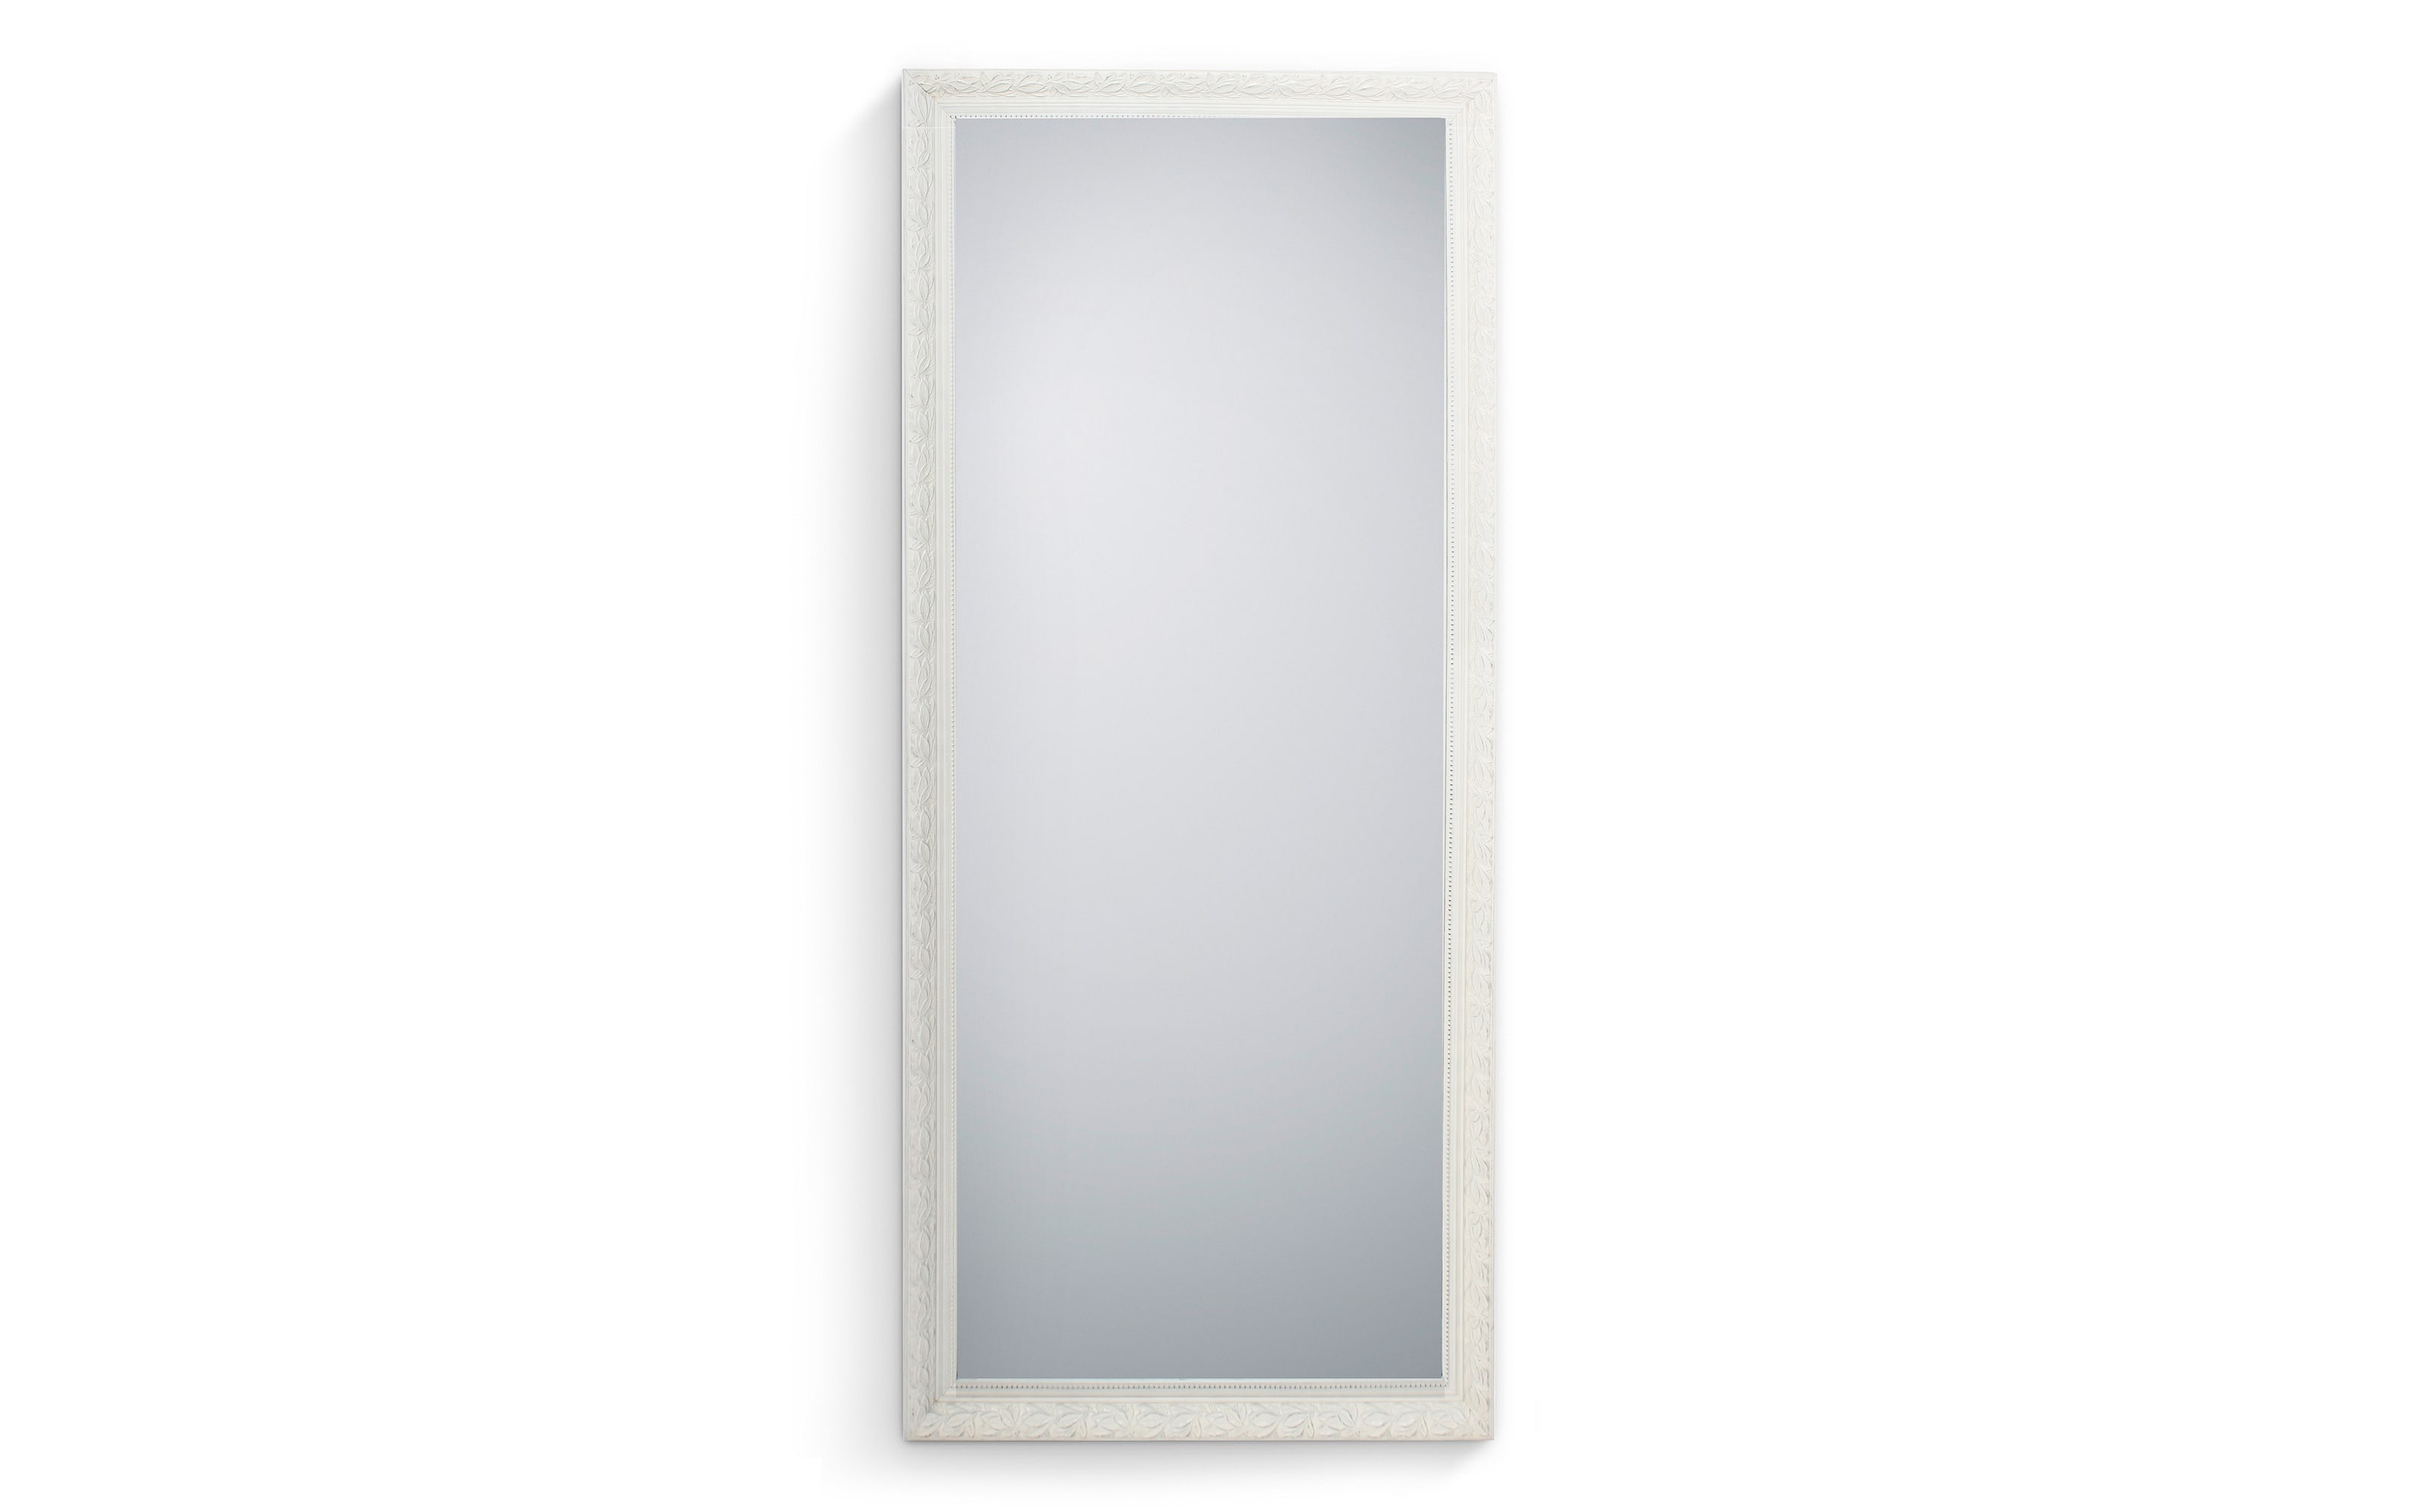 Rahmenspiegel Sonja in weiß, 70 x 170 cm